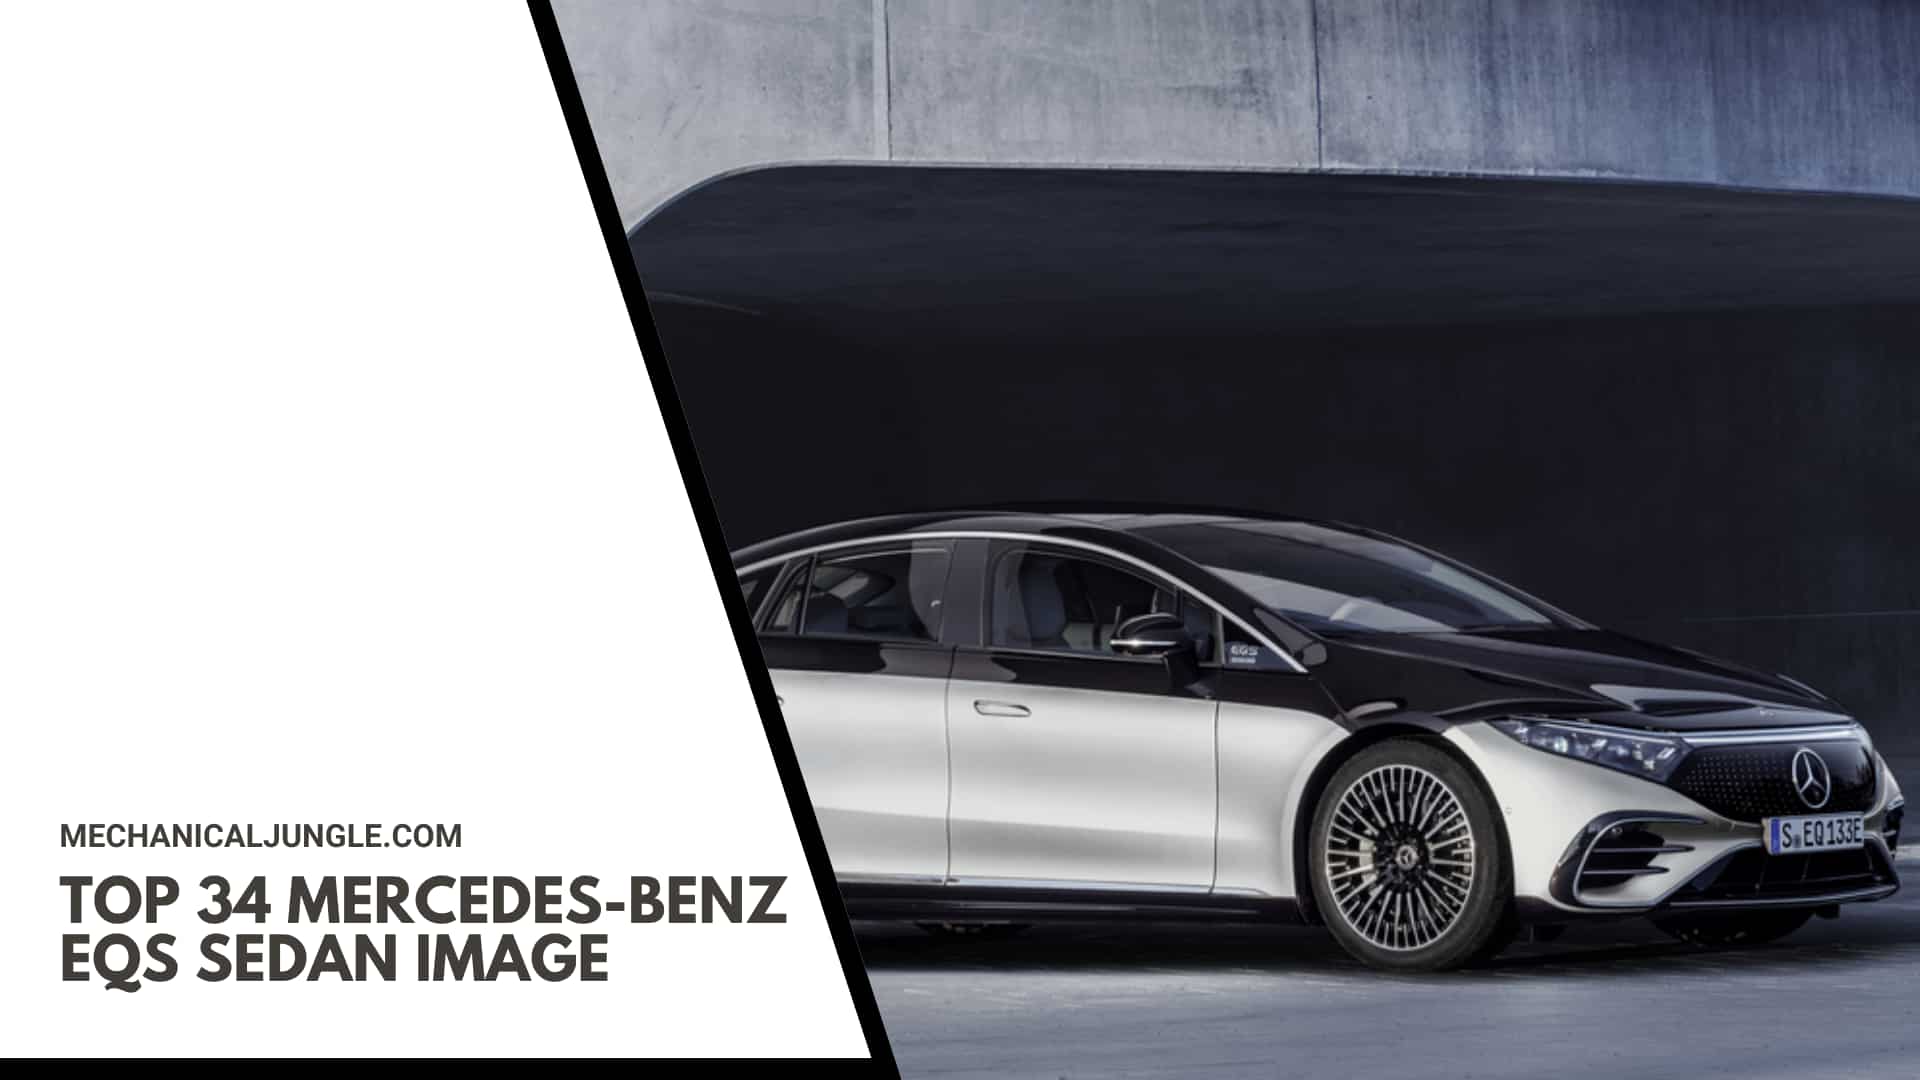 Top 34 Mercedes-Benz EQS Sedan Image